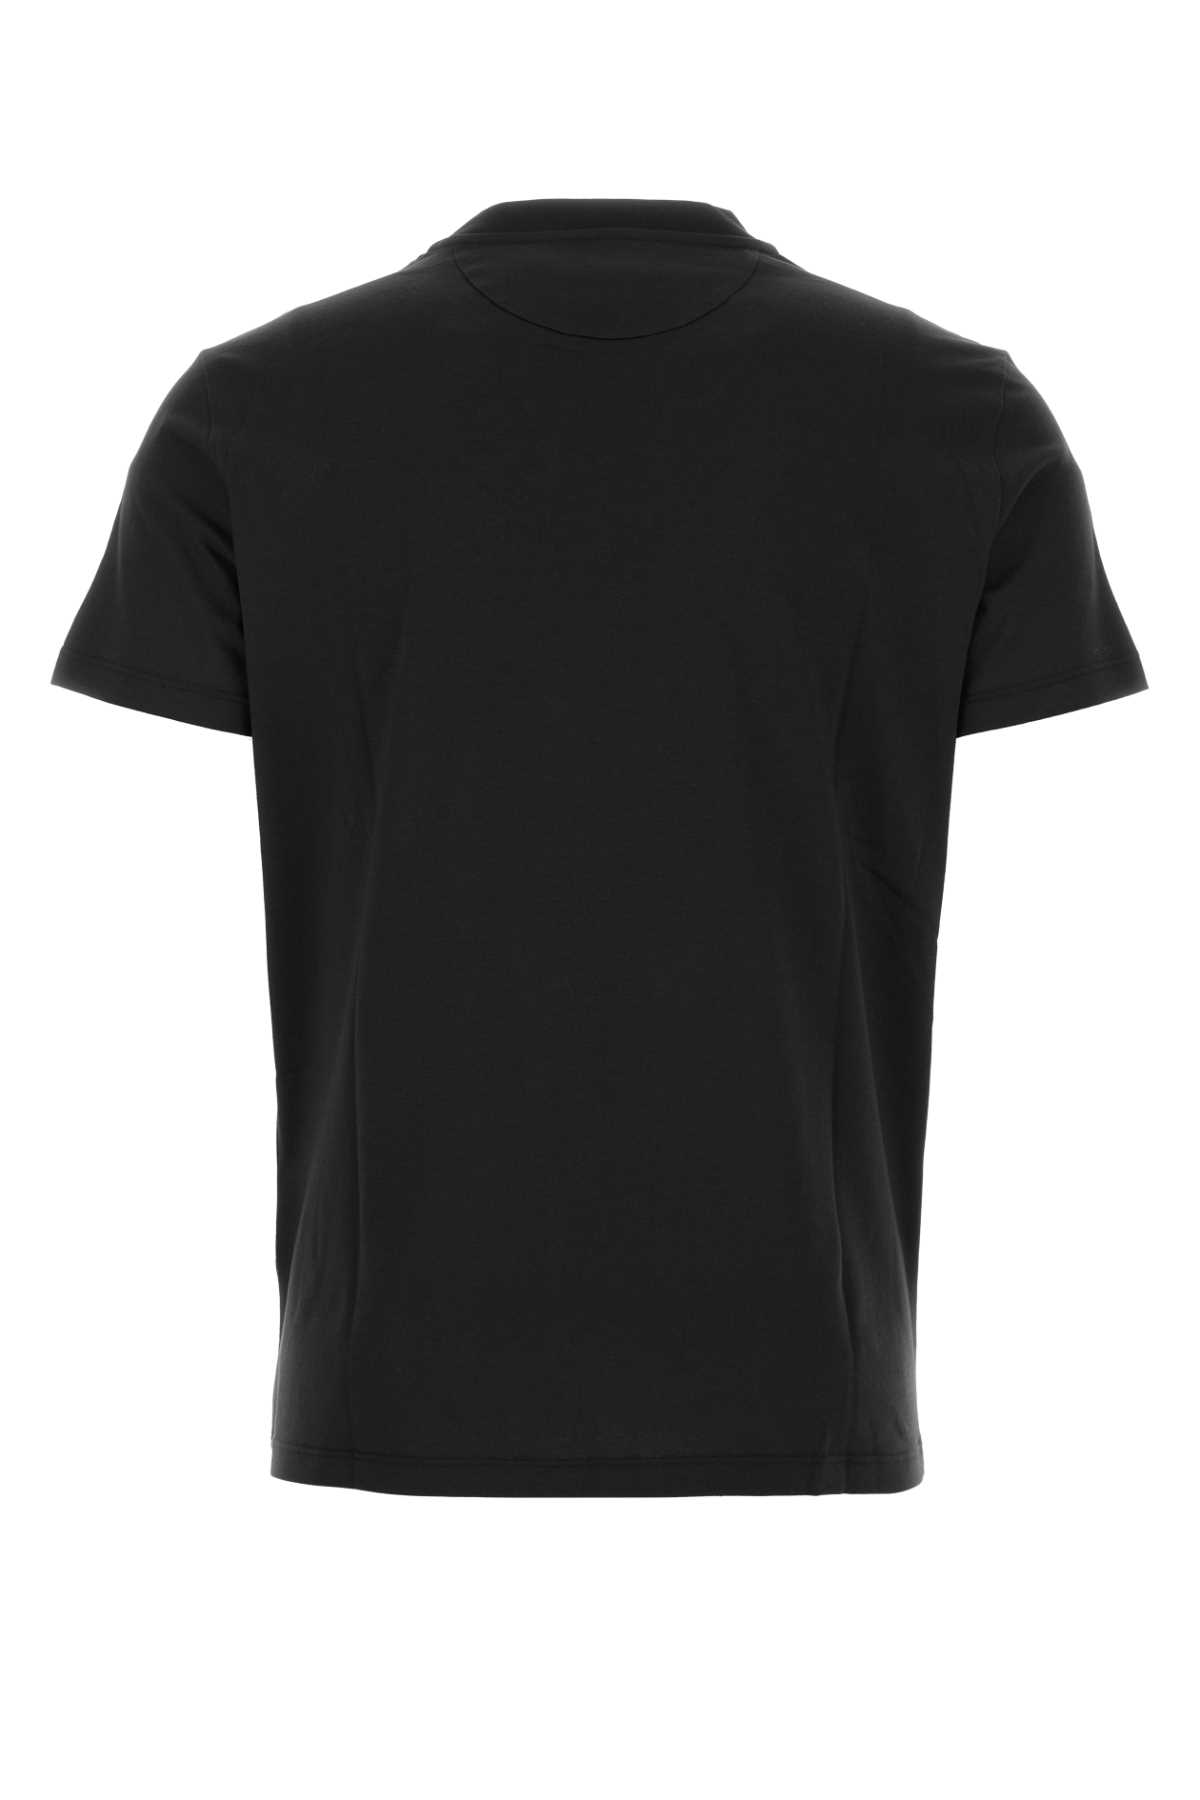 Valentino Black Cotton T-shirt In Nerogrigio